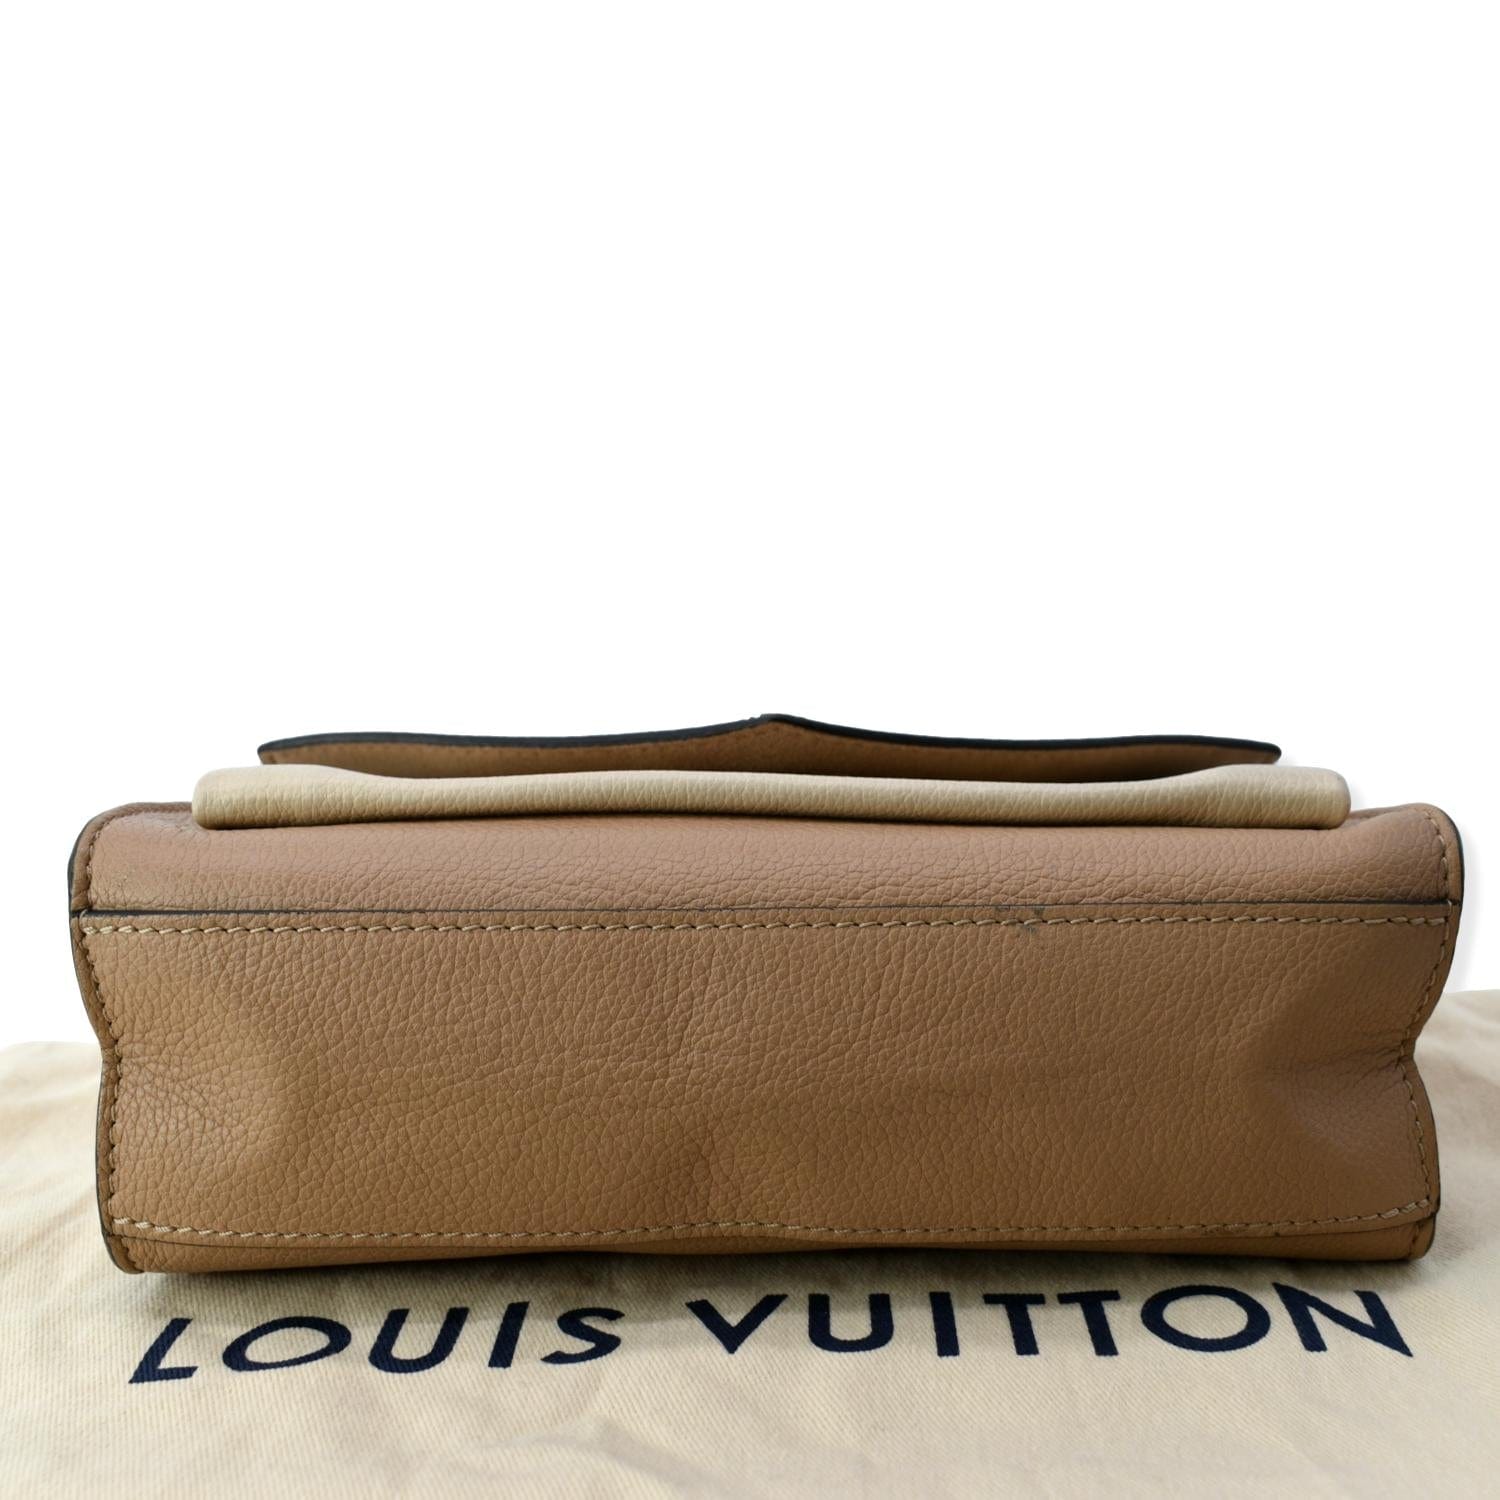 Louis Vuitton MyLockMe Chain Bag Black Calf